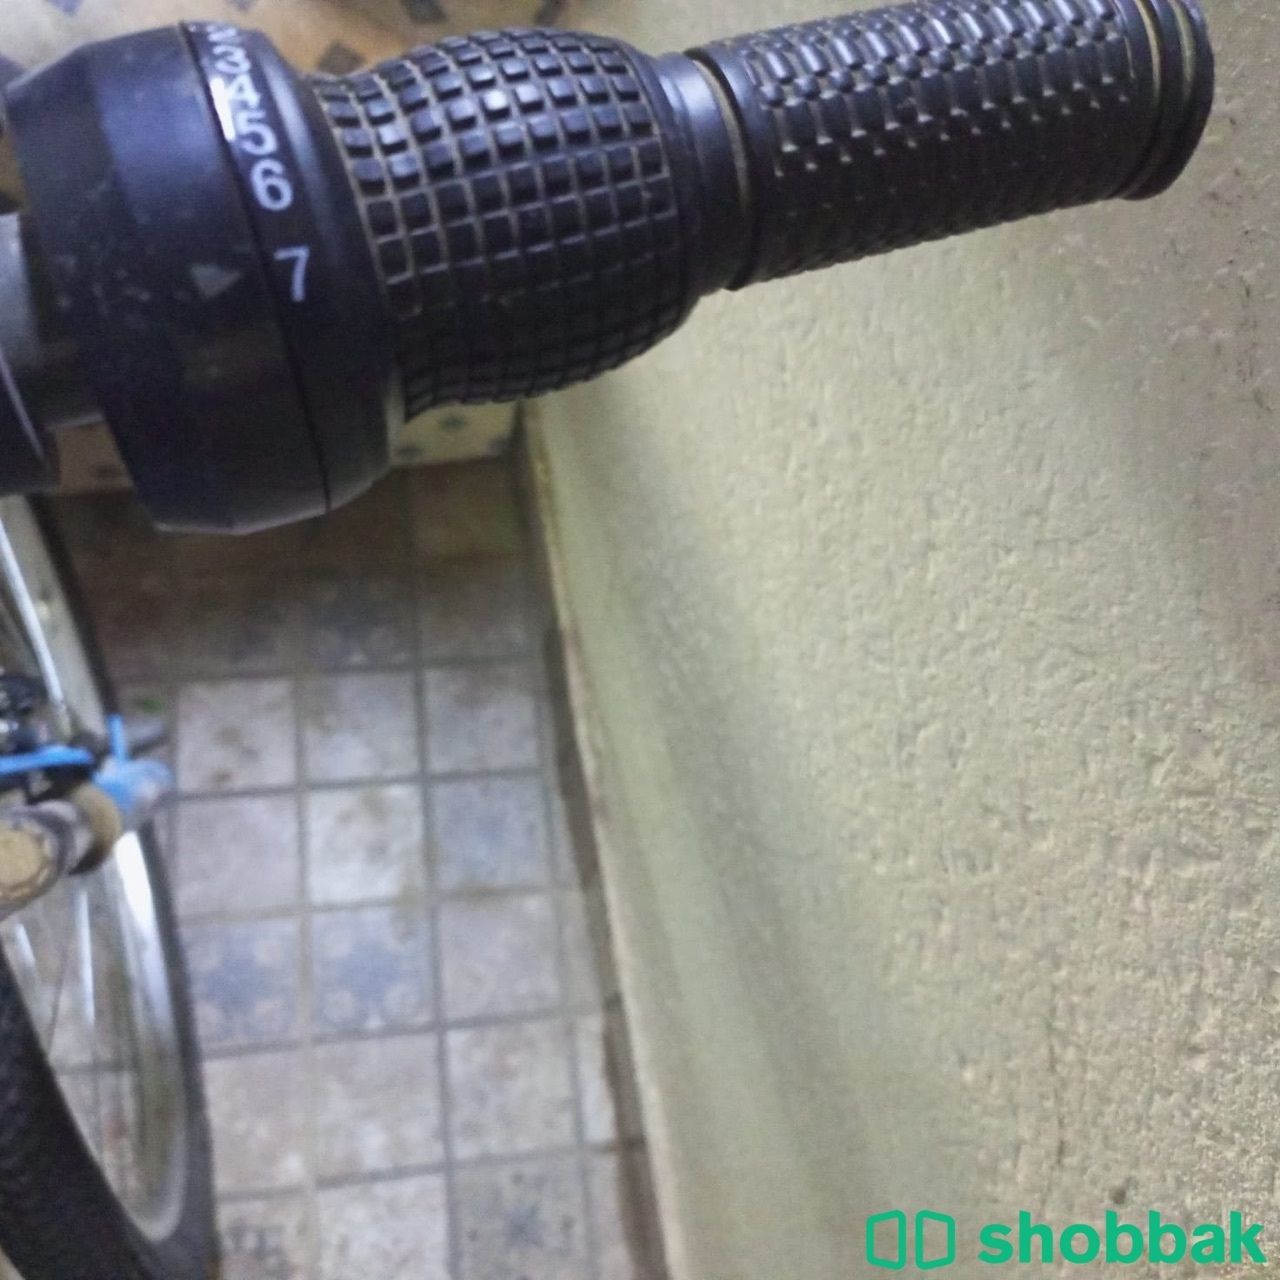 دراجة هوائية مستعملة نظيف Shobbak Saudi Arabia